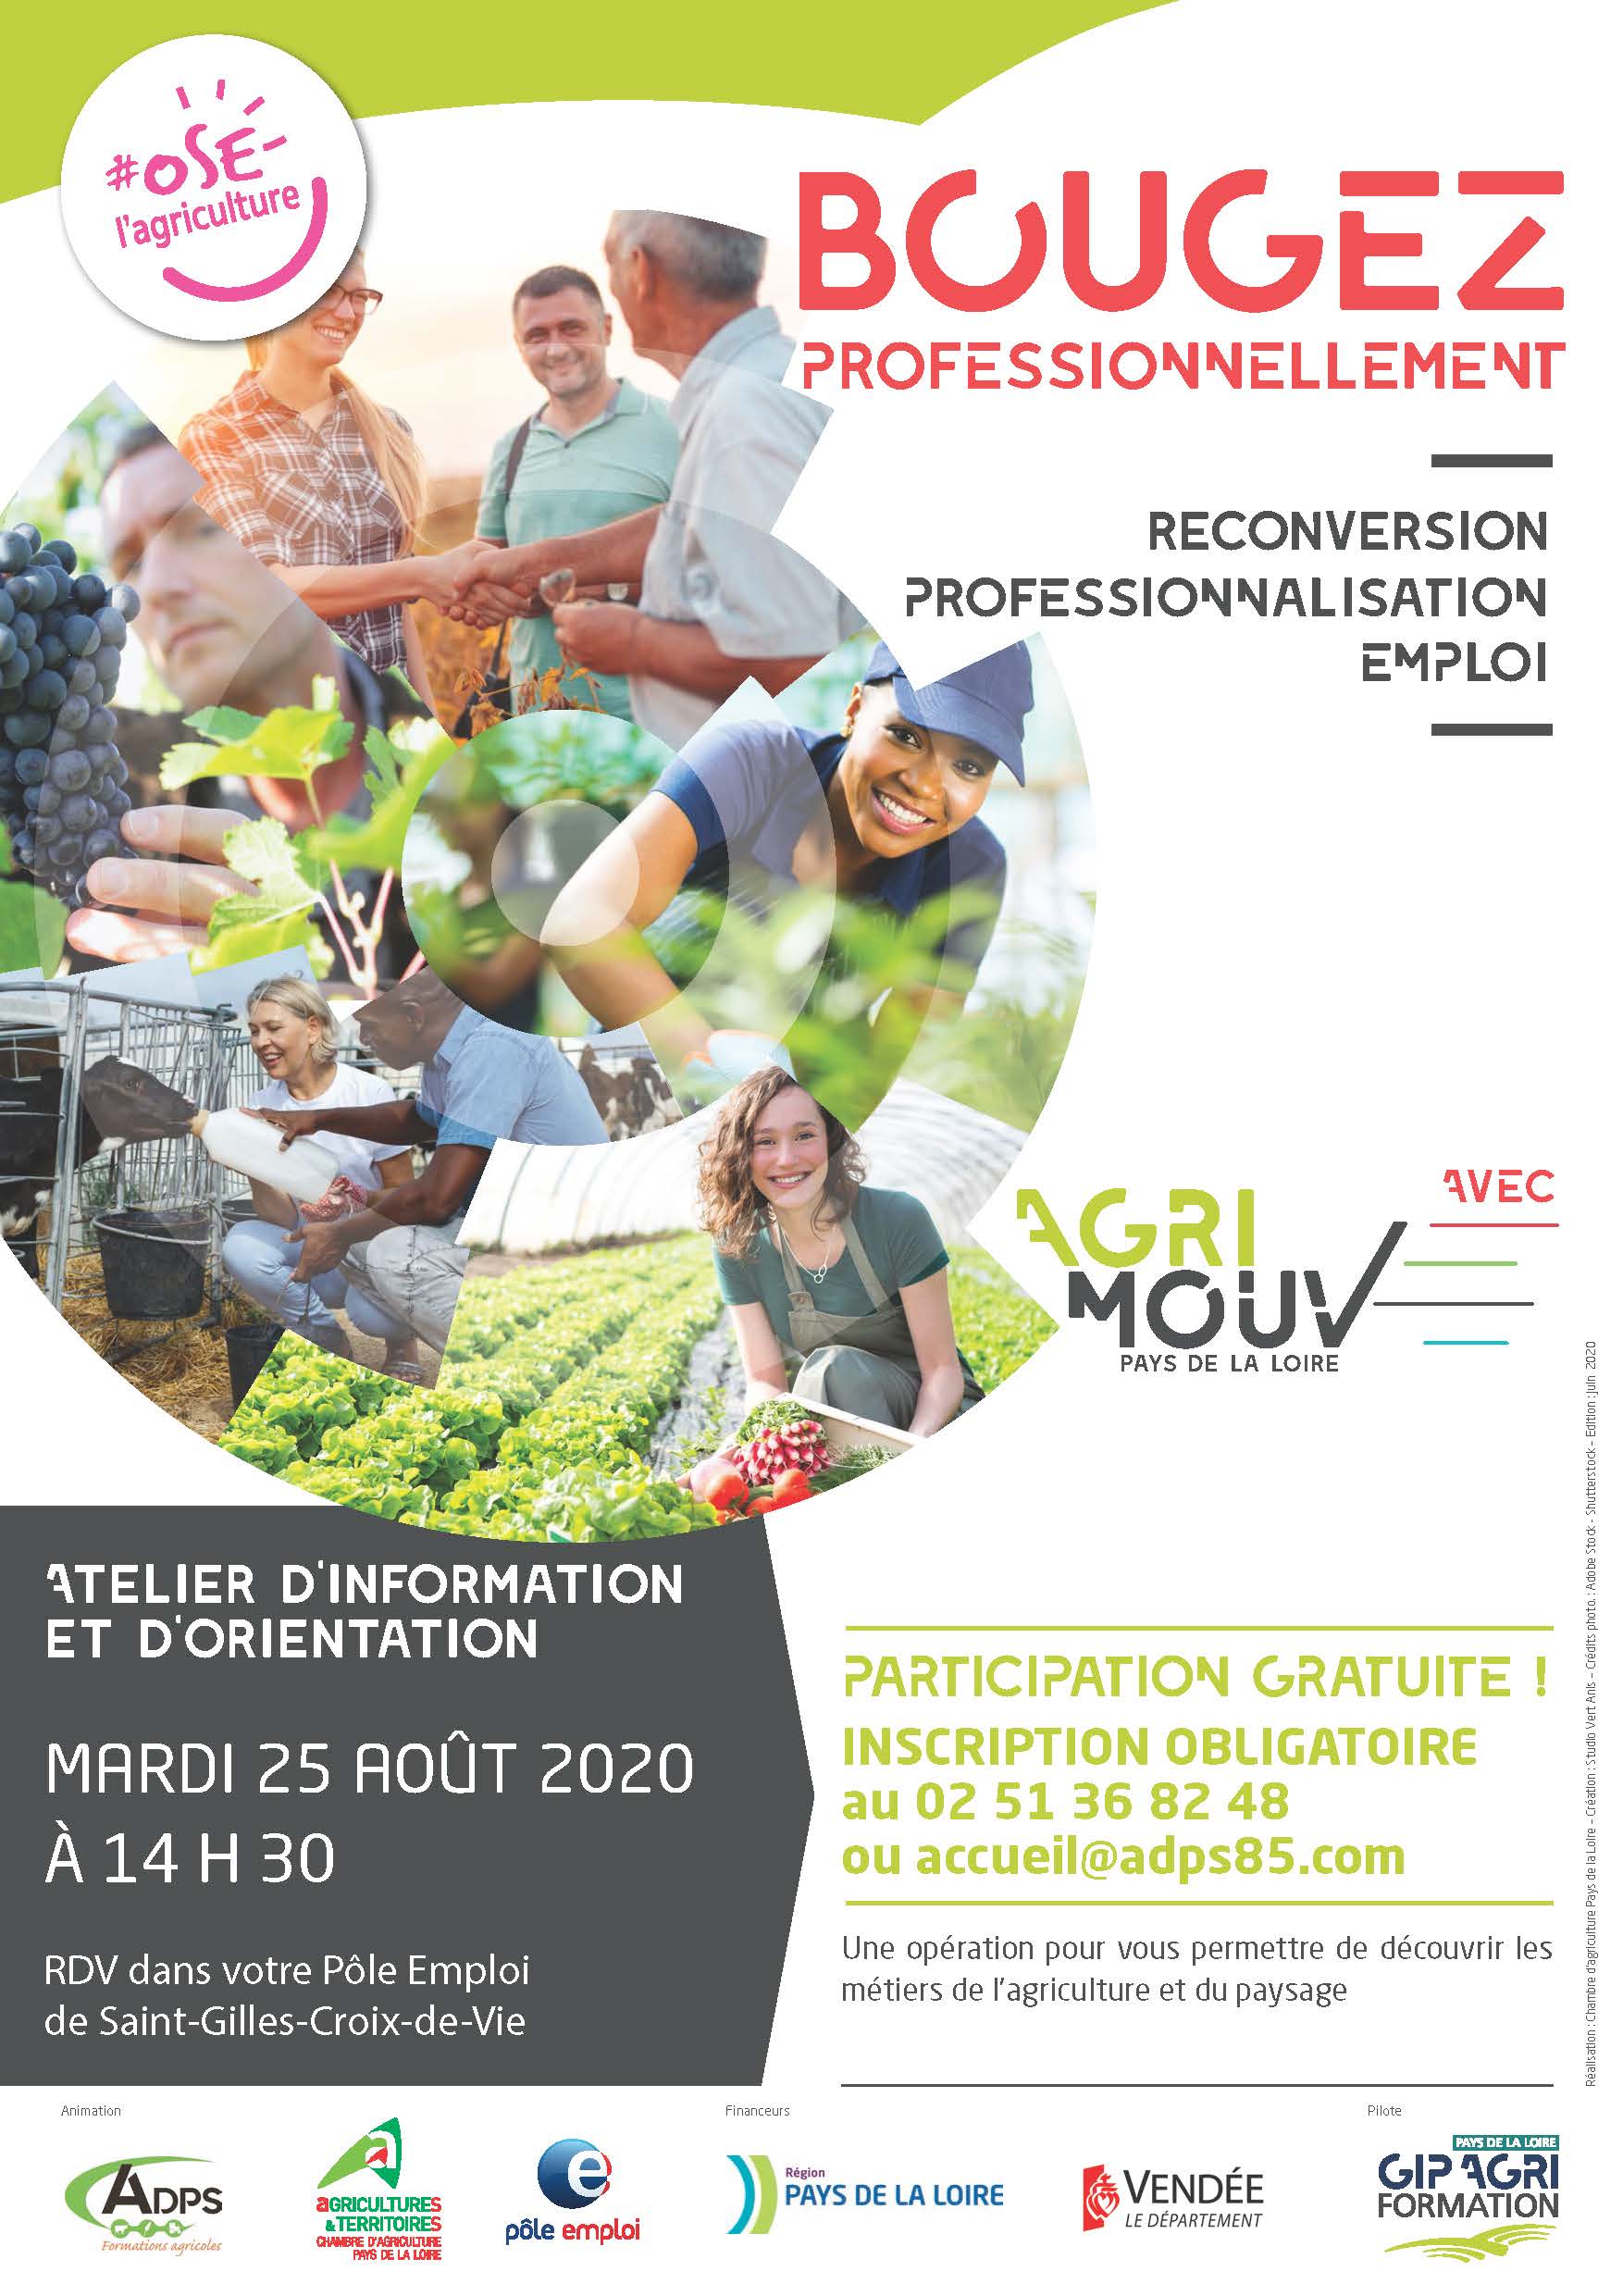 Agri'mouv - Atelier d'information